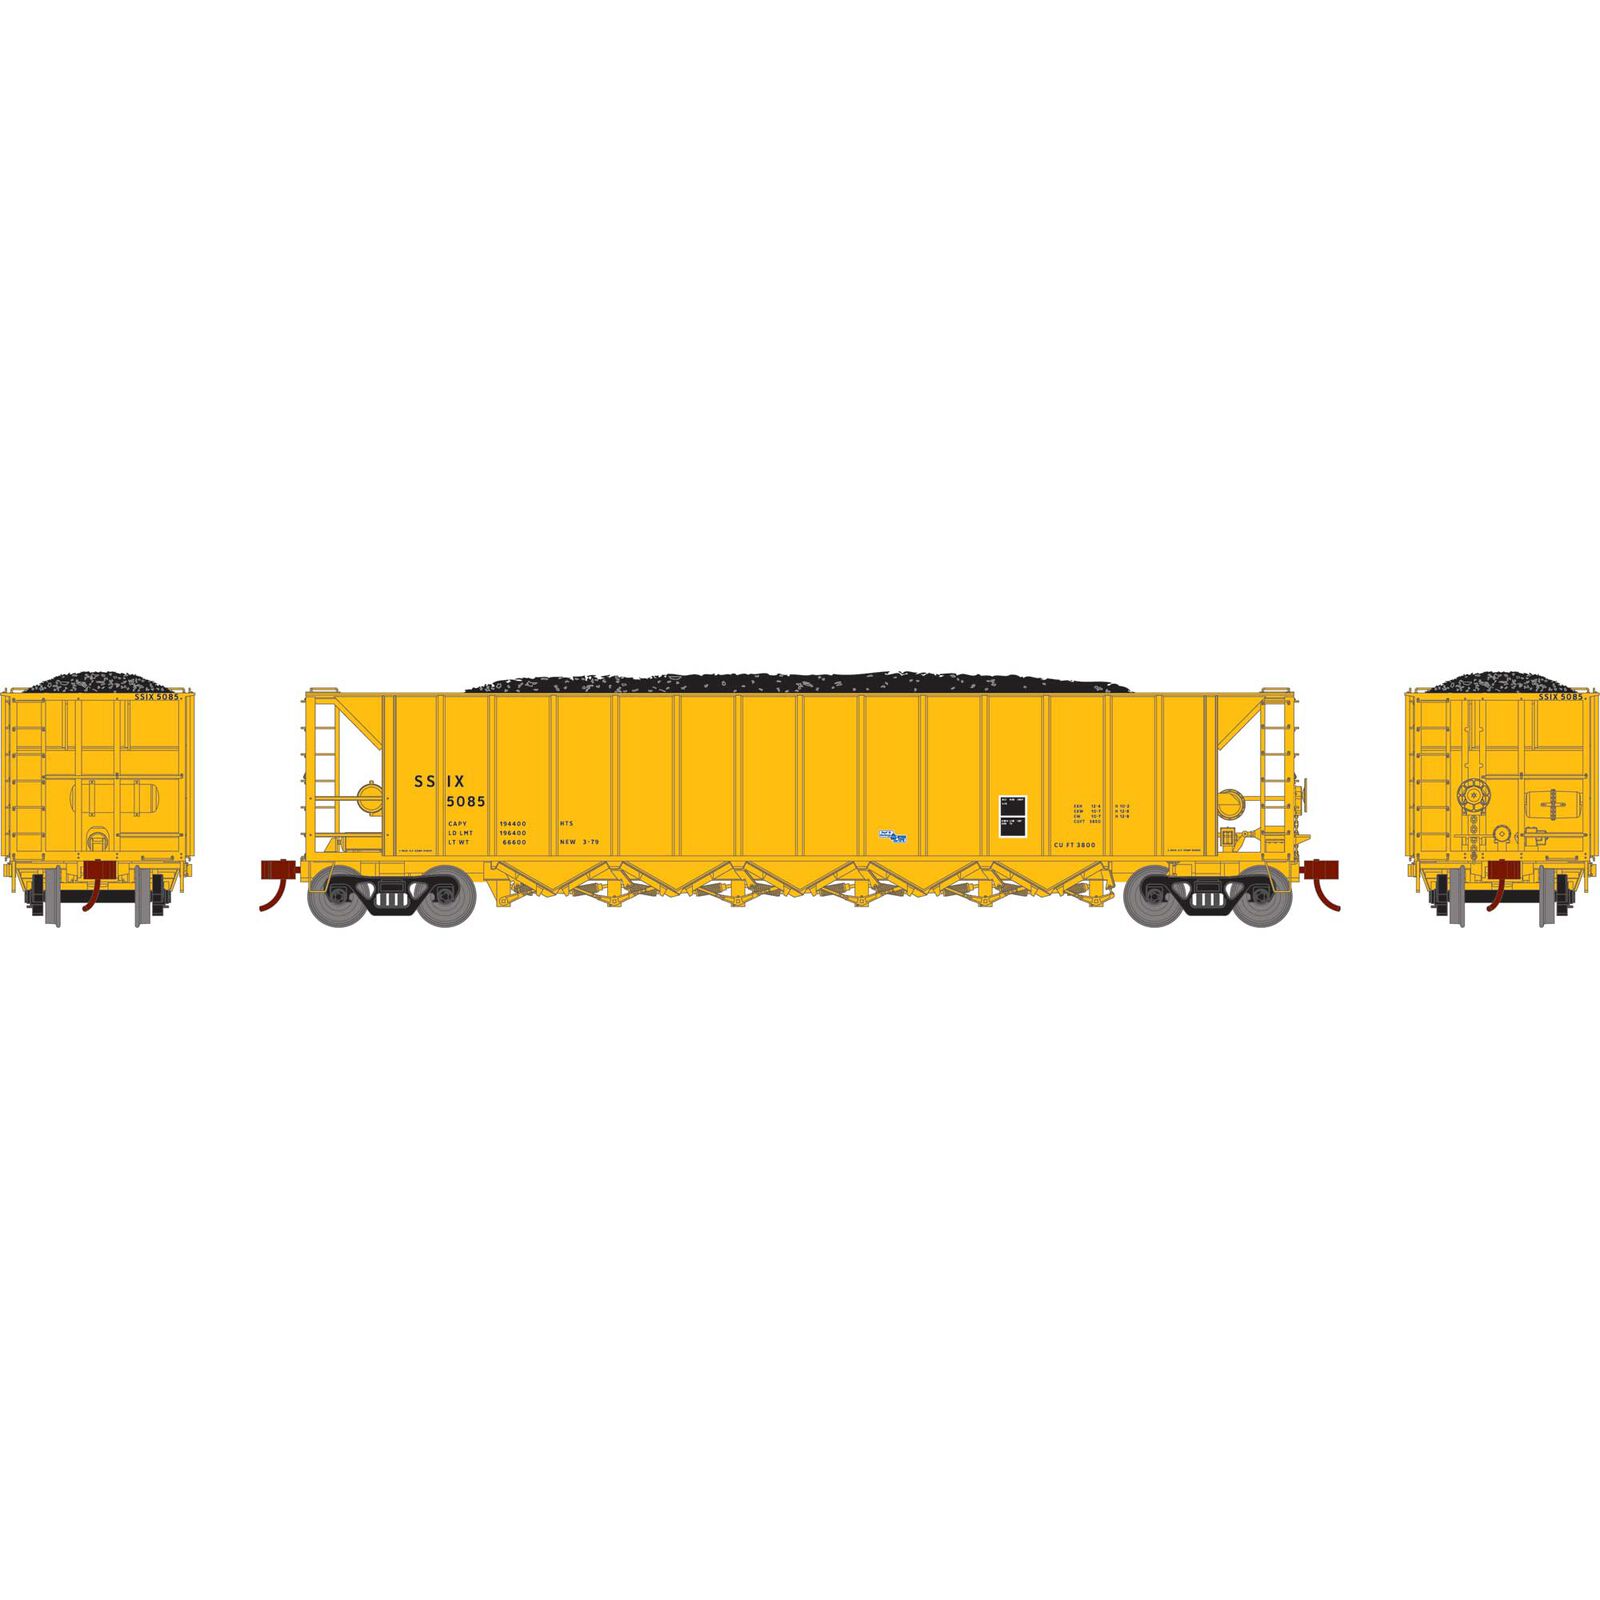 HO Ortner 5-Bay Rapid Discharge Hopper, SSIX #5091 / 5094 / 5098 / 5099 /  5101 (5) Model Train | Athearn | Kopfstützen